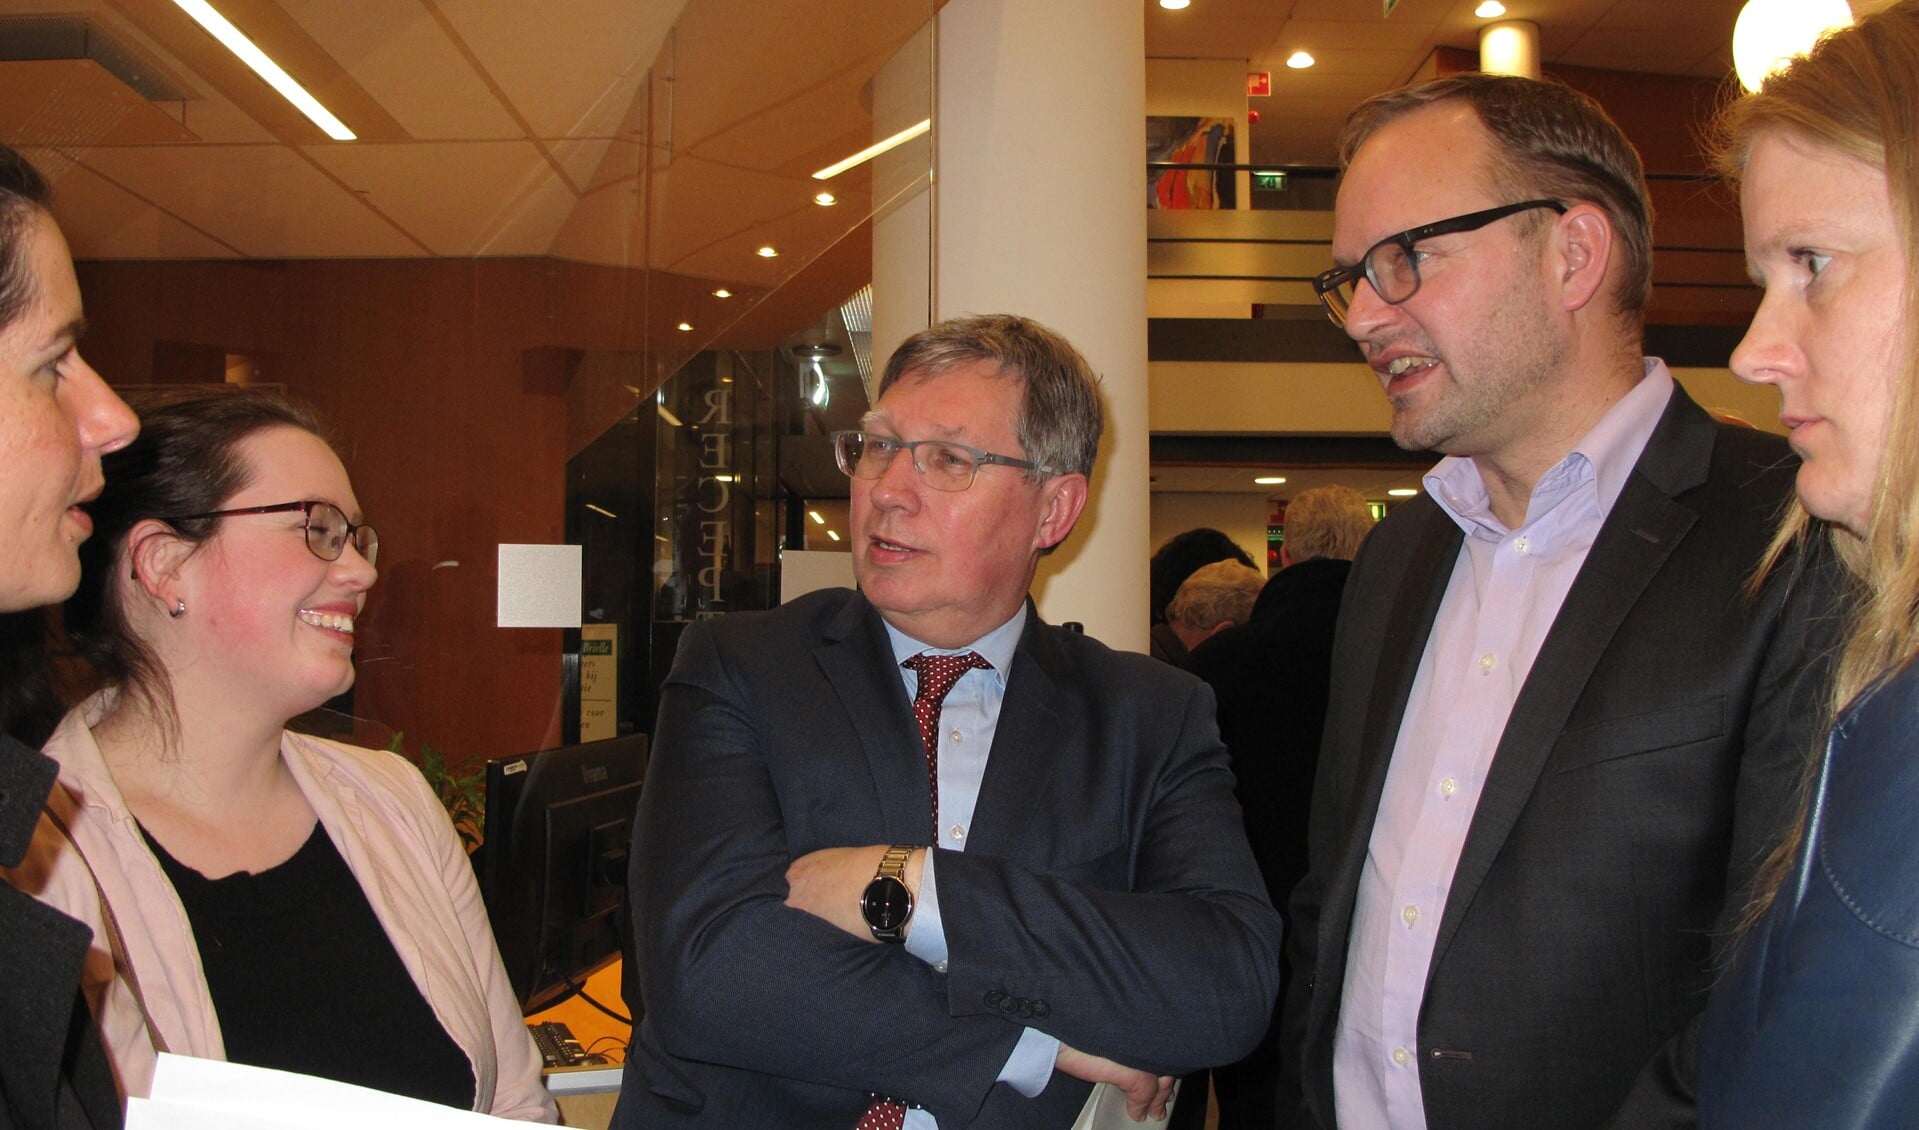 Burgemeester Gregor Rensen tussen enkele verheugde IBGB'ers. Rechts van hem kijkt Robert van der Kooi lachend toe